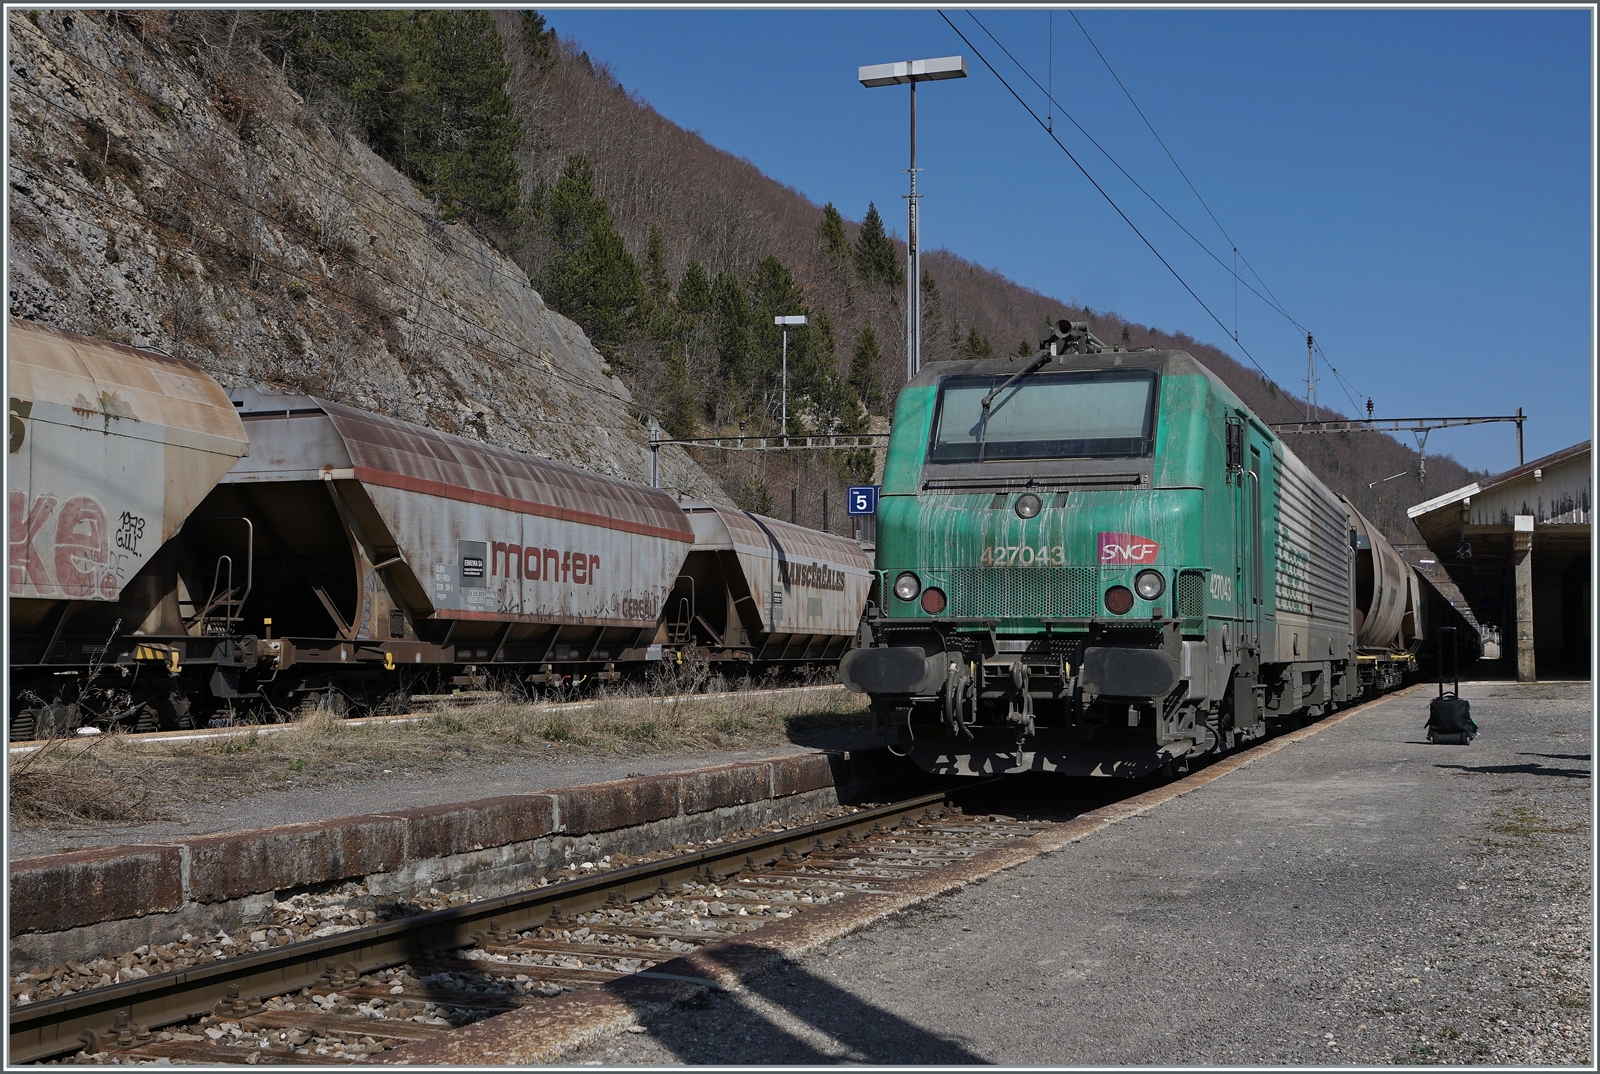 Von mir unbemerkt schob die SNCF BB 27043 den  Spaghetti -Zug nach und hat sich bereits an die Spitze des Gegenrichtung gesetzt. 


24. März 2022